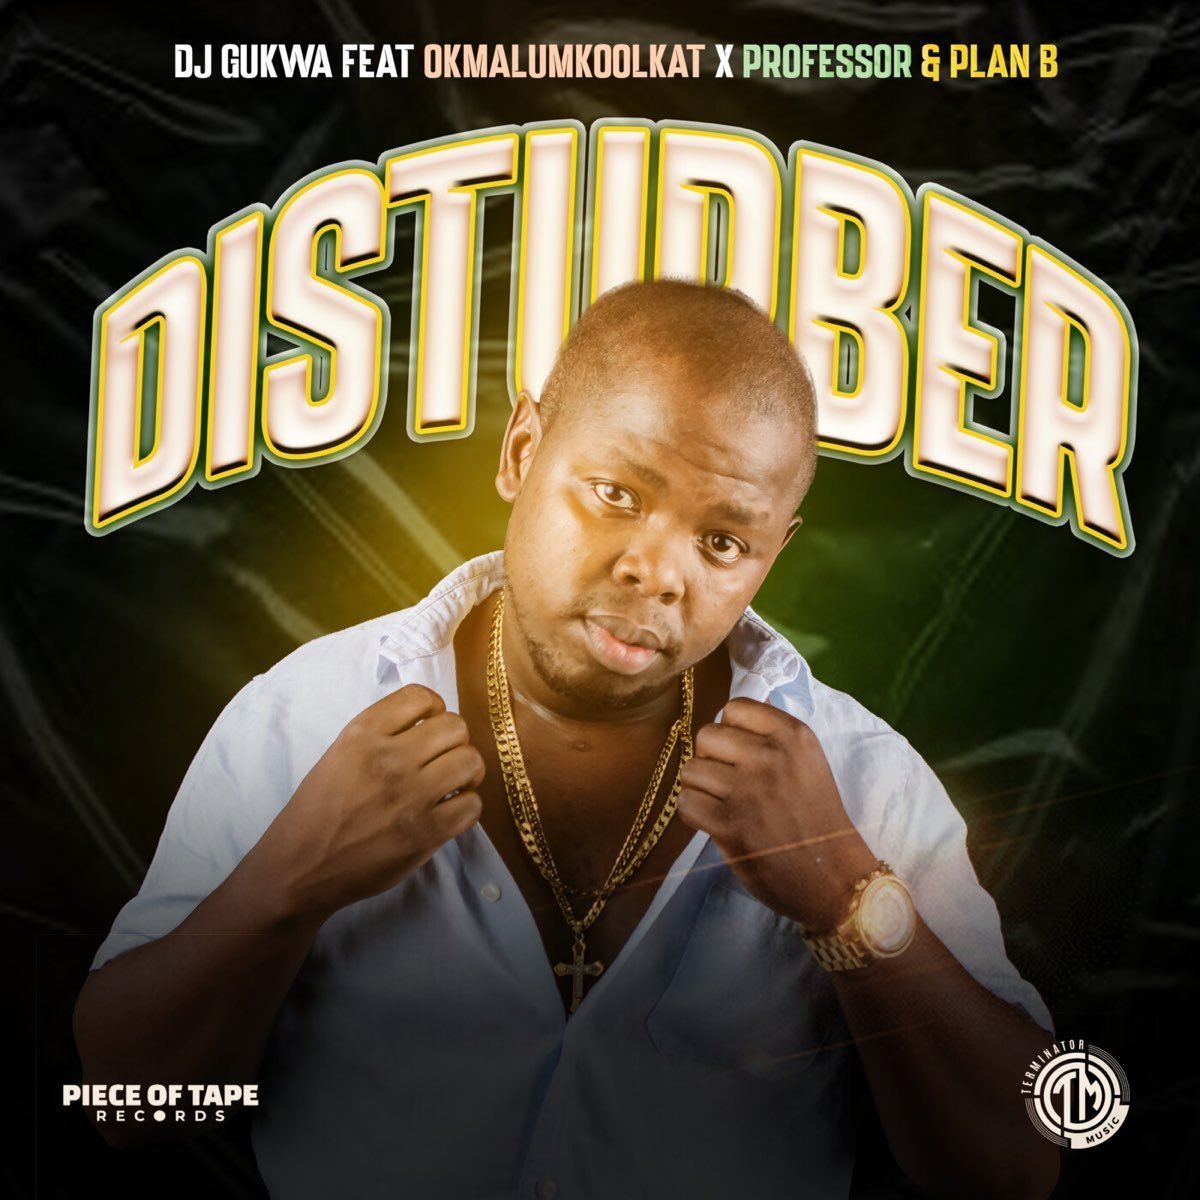 DJ Gukwa - Disturber ft. Okmalumkoolkat, Professor & Plan B mp3 download free lyrics